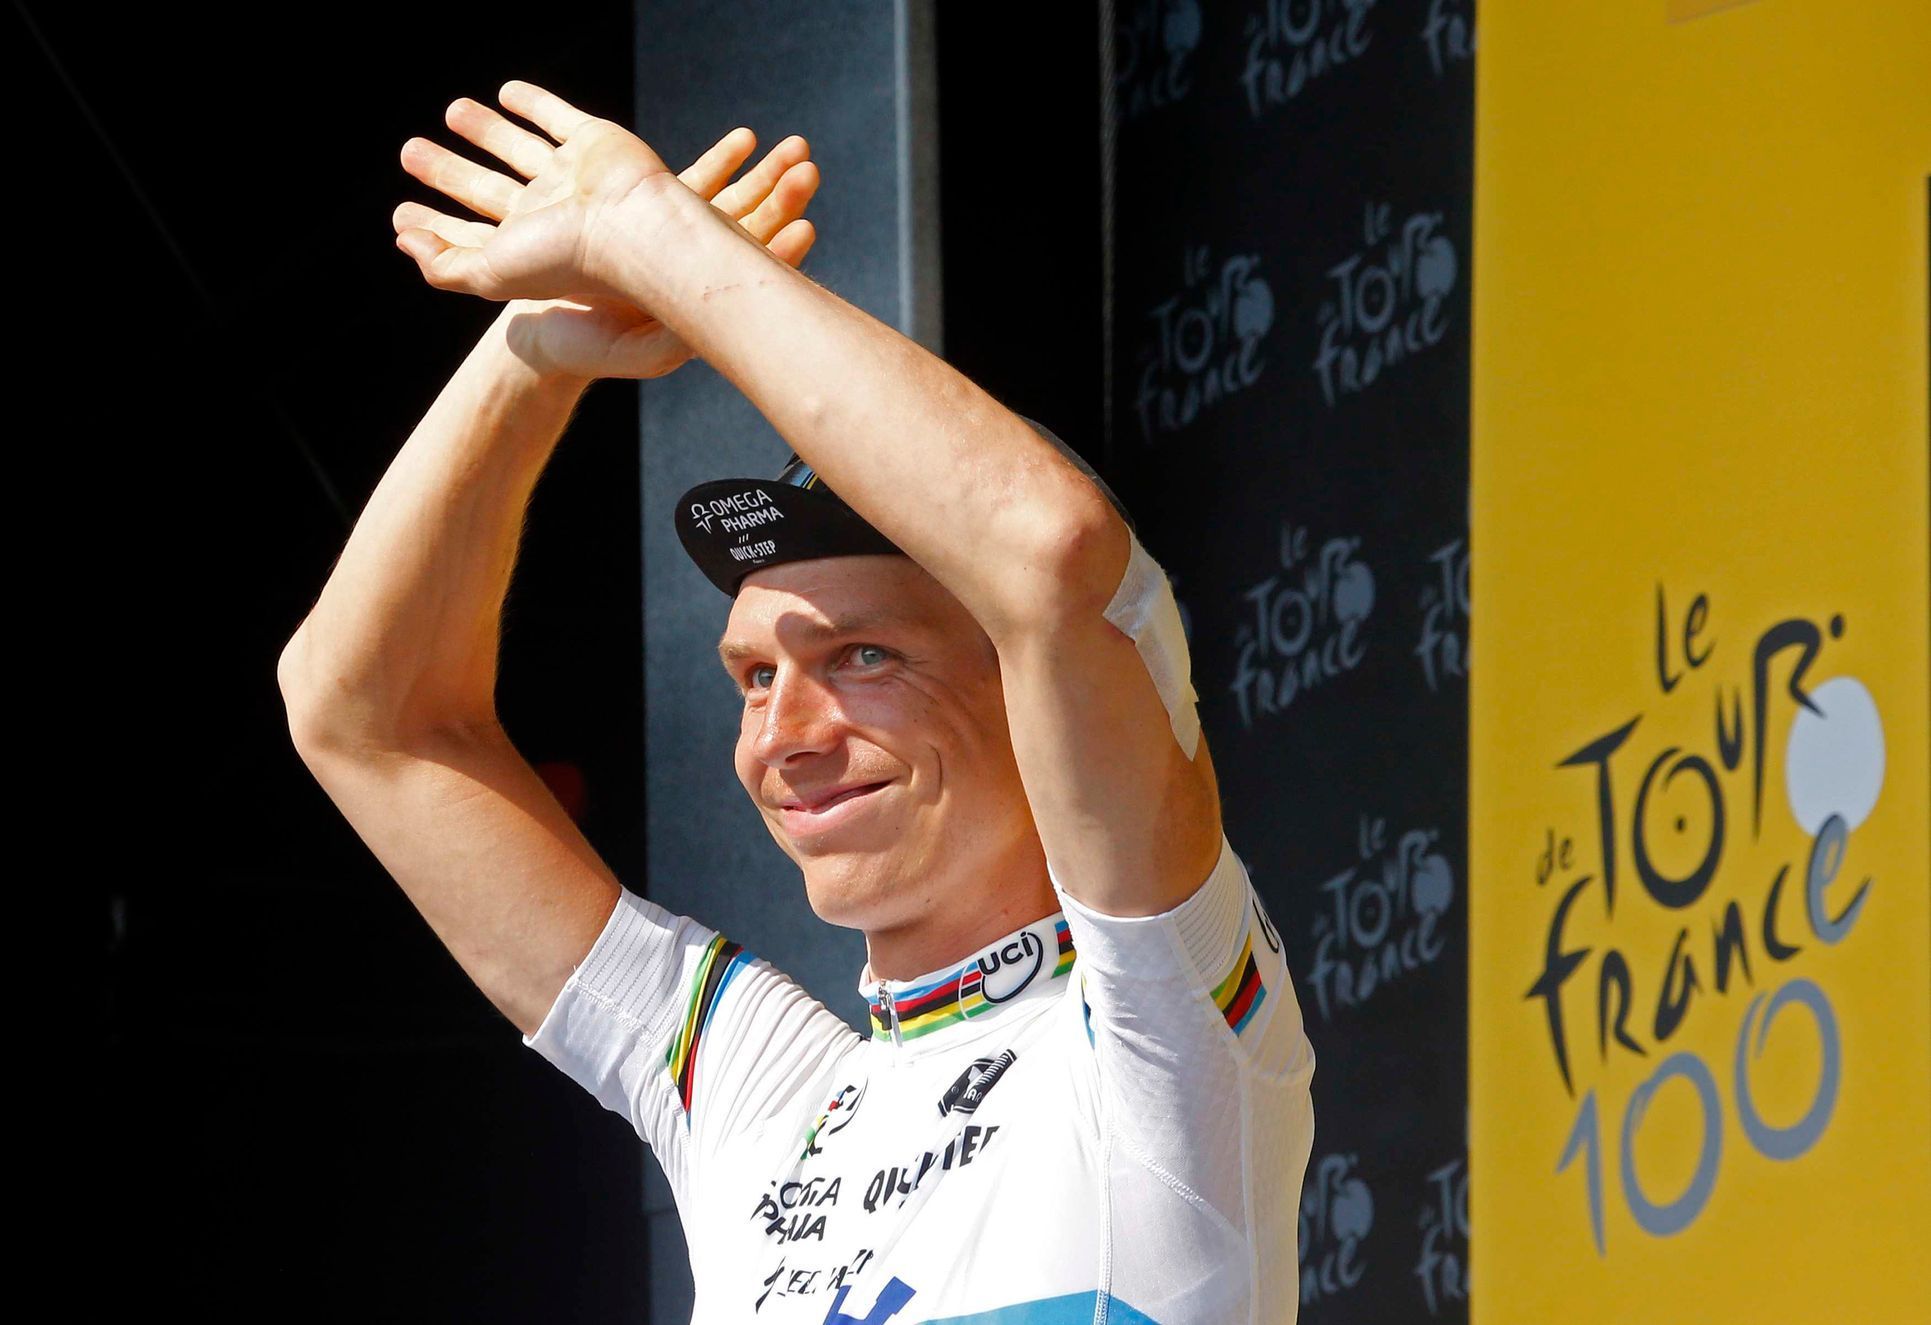 Tour de France 2013 - 11. etapa, časovka (Tony Martin)